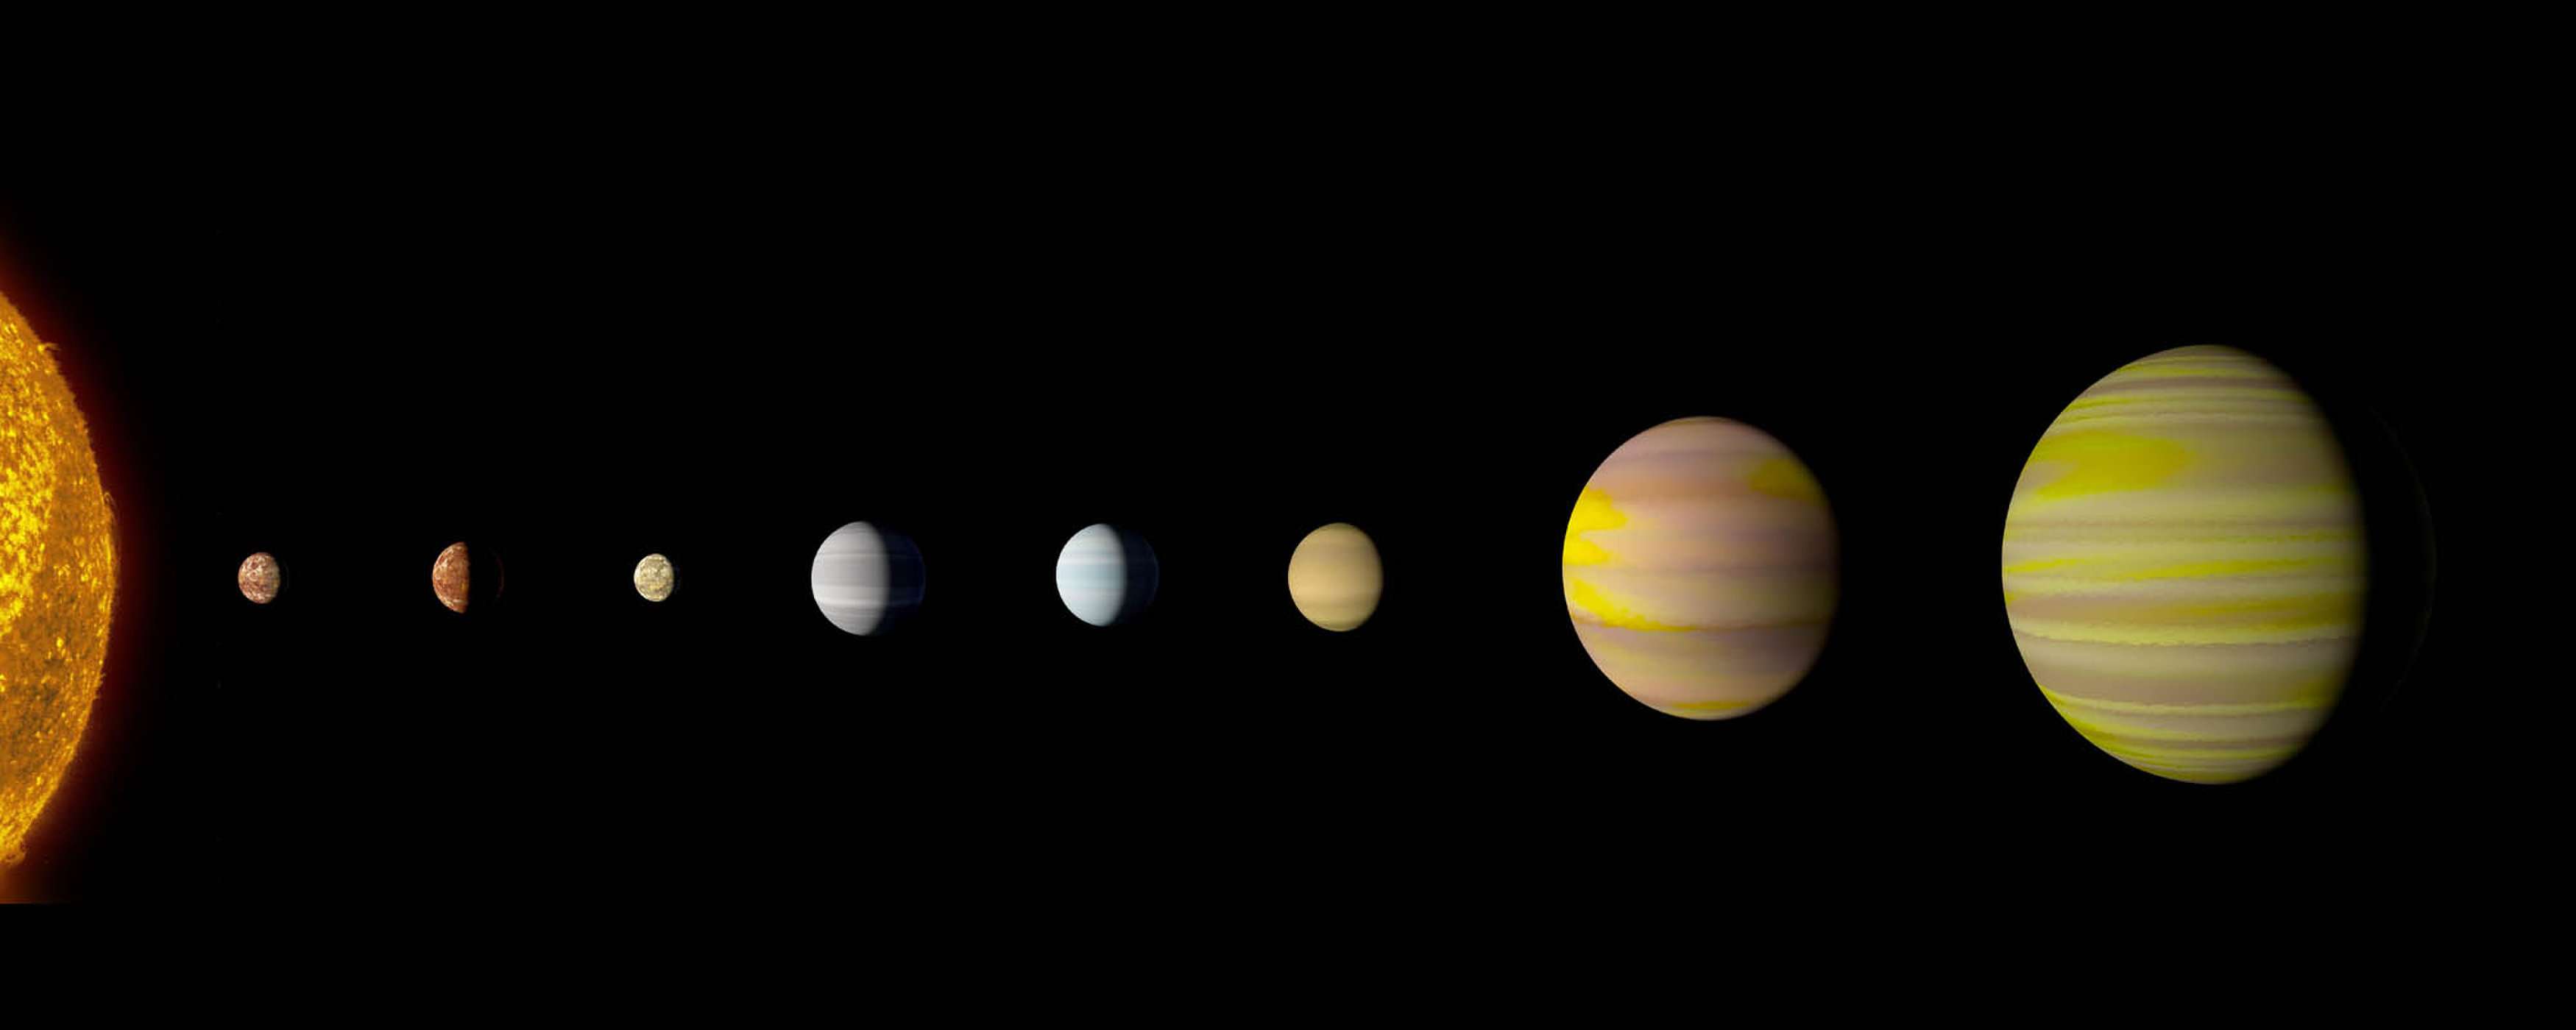 Η NASA ανακάλυψε το πρώτο άστρο με οκτώ πλανήτες